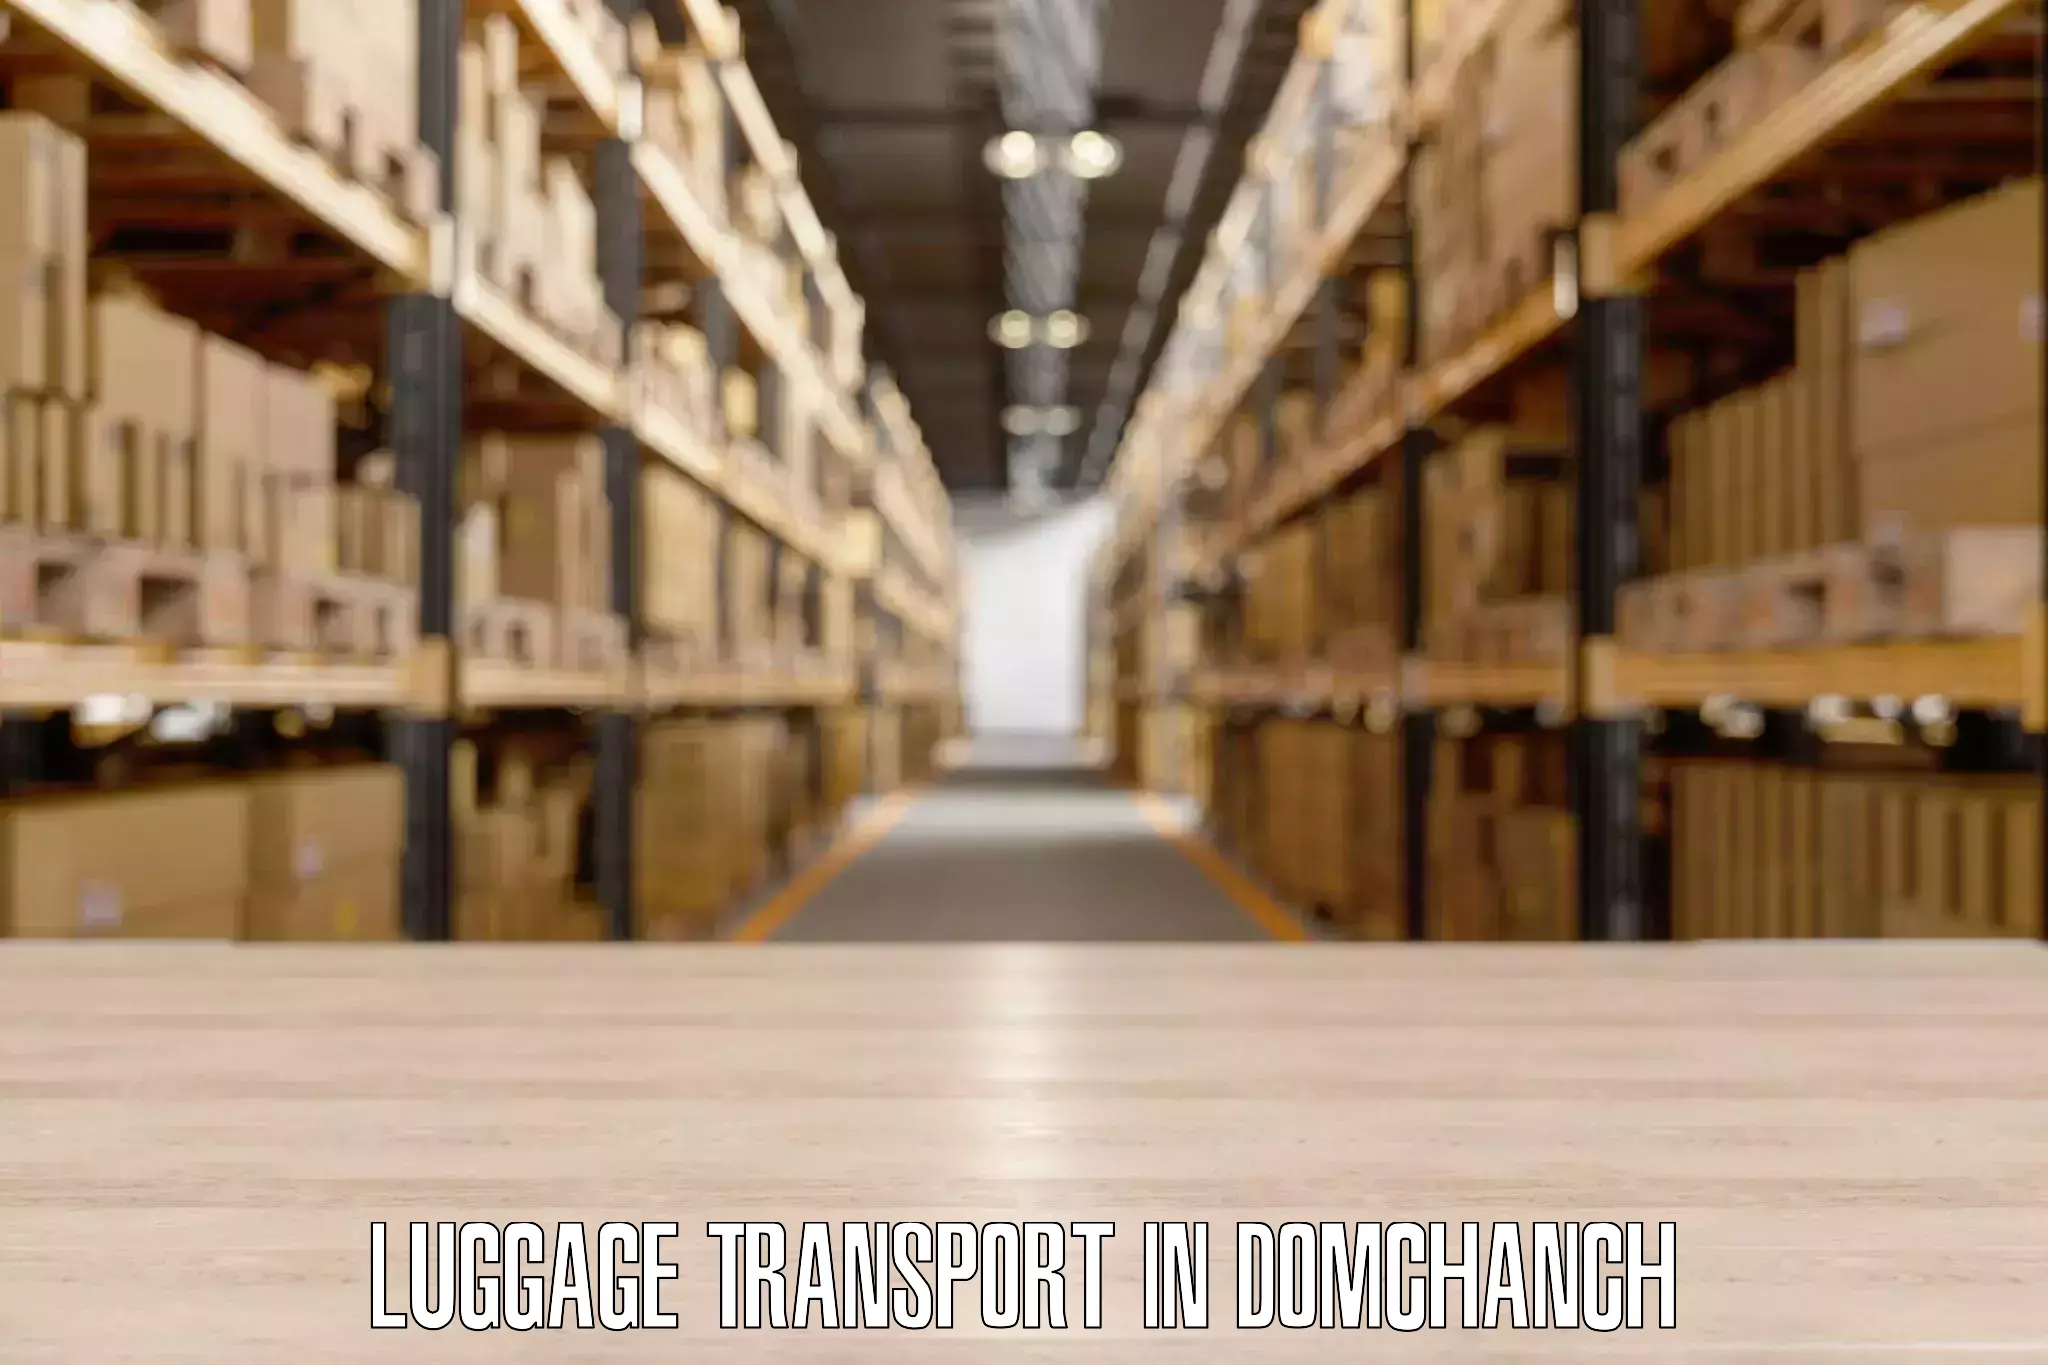 Door to door luggage delivery in Domchanch